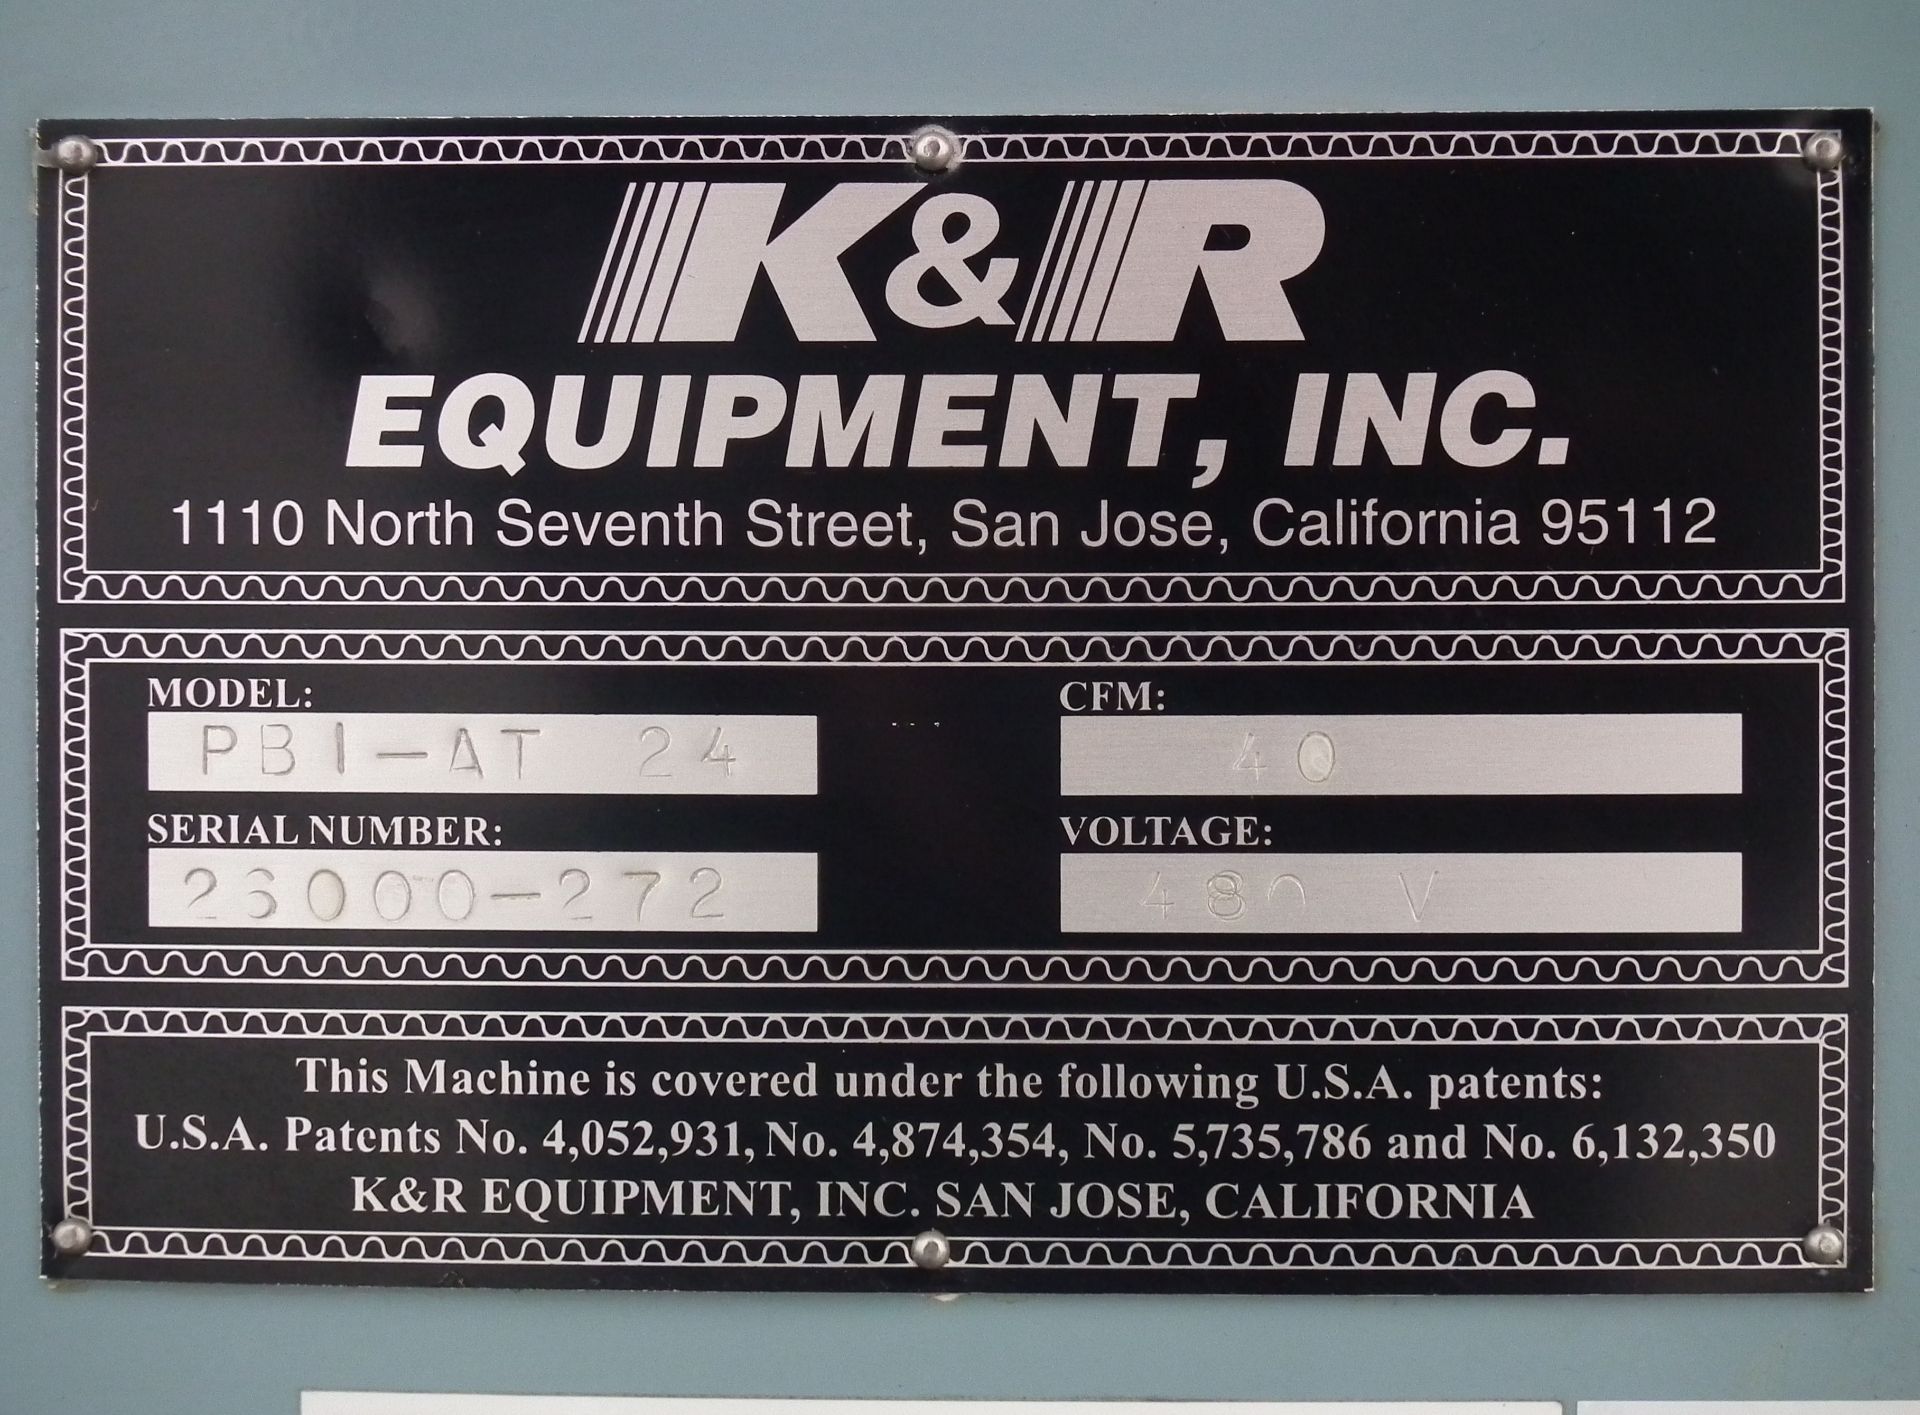 K&R PBI-AT 24 Case Erector and Poly Bag Inserter B3840 - Image 13 of 13